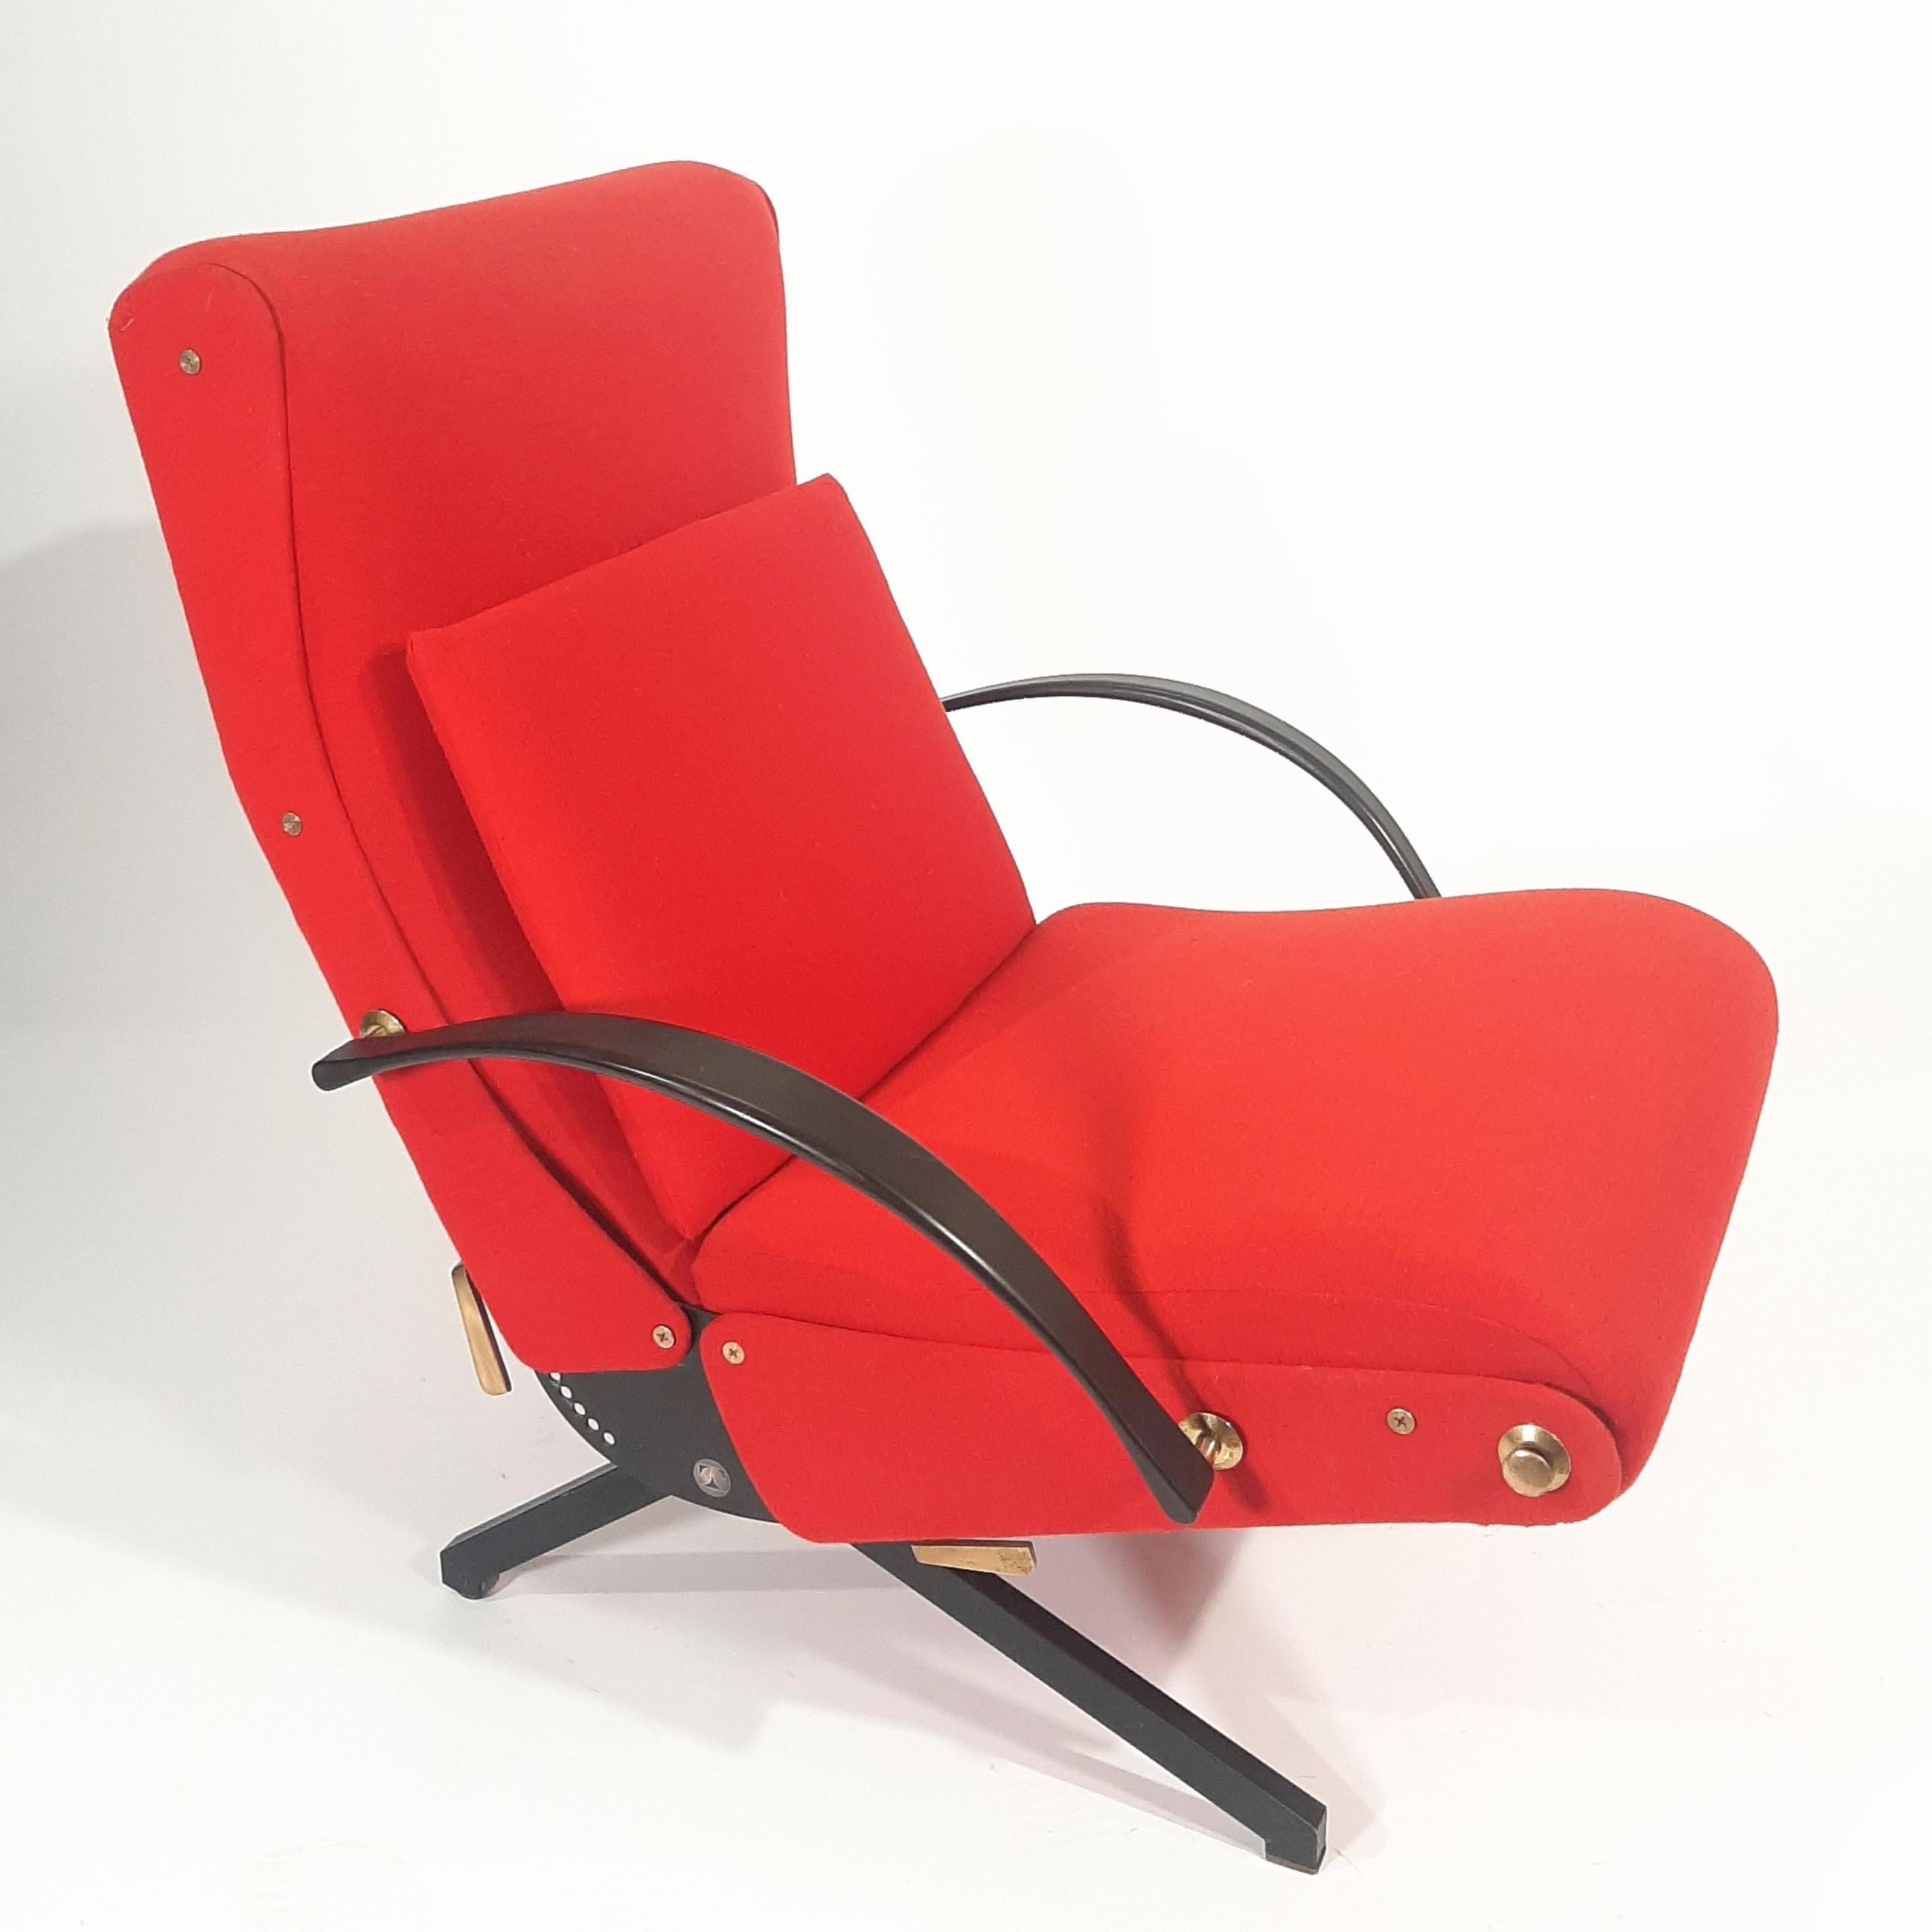 Der vielseitige und bequeme Sessel P40 wurde 1955 von Osvaldo Borsani für Tecno entworfen. Der Stuhl kann in über 400 Positionen eingestellt werden; die Rückenlehne kann in verschiedenen Winkeln geneigt werden, die Kopfstütze lässt sich nach oben